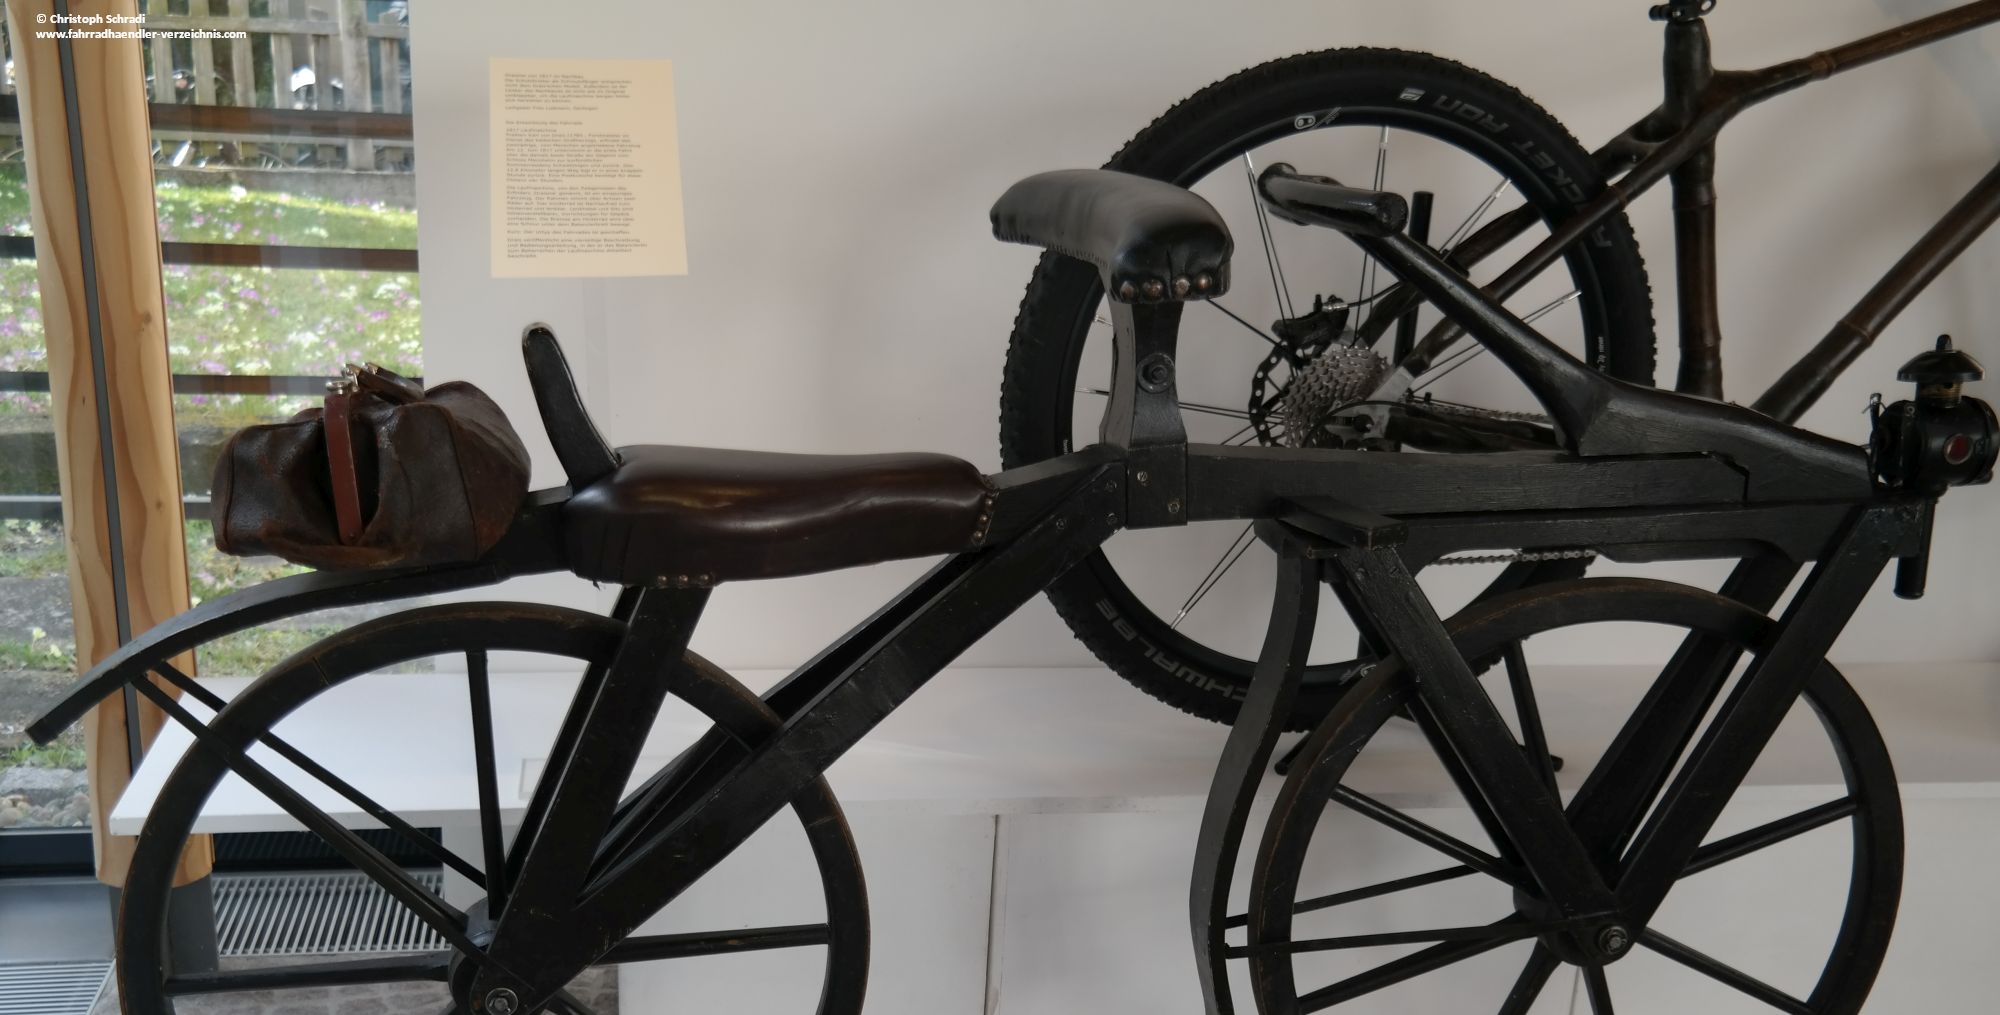 In 200 Jahren Fahrradgeschichte hat sich so einiges getan - vom Laufrad zum Hightech Mountainbike mit Bambusrahmen